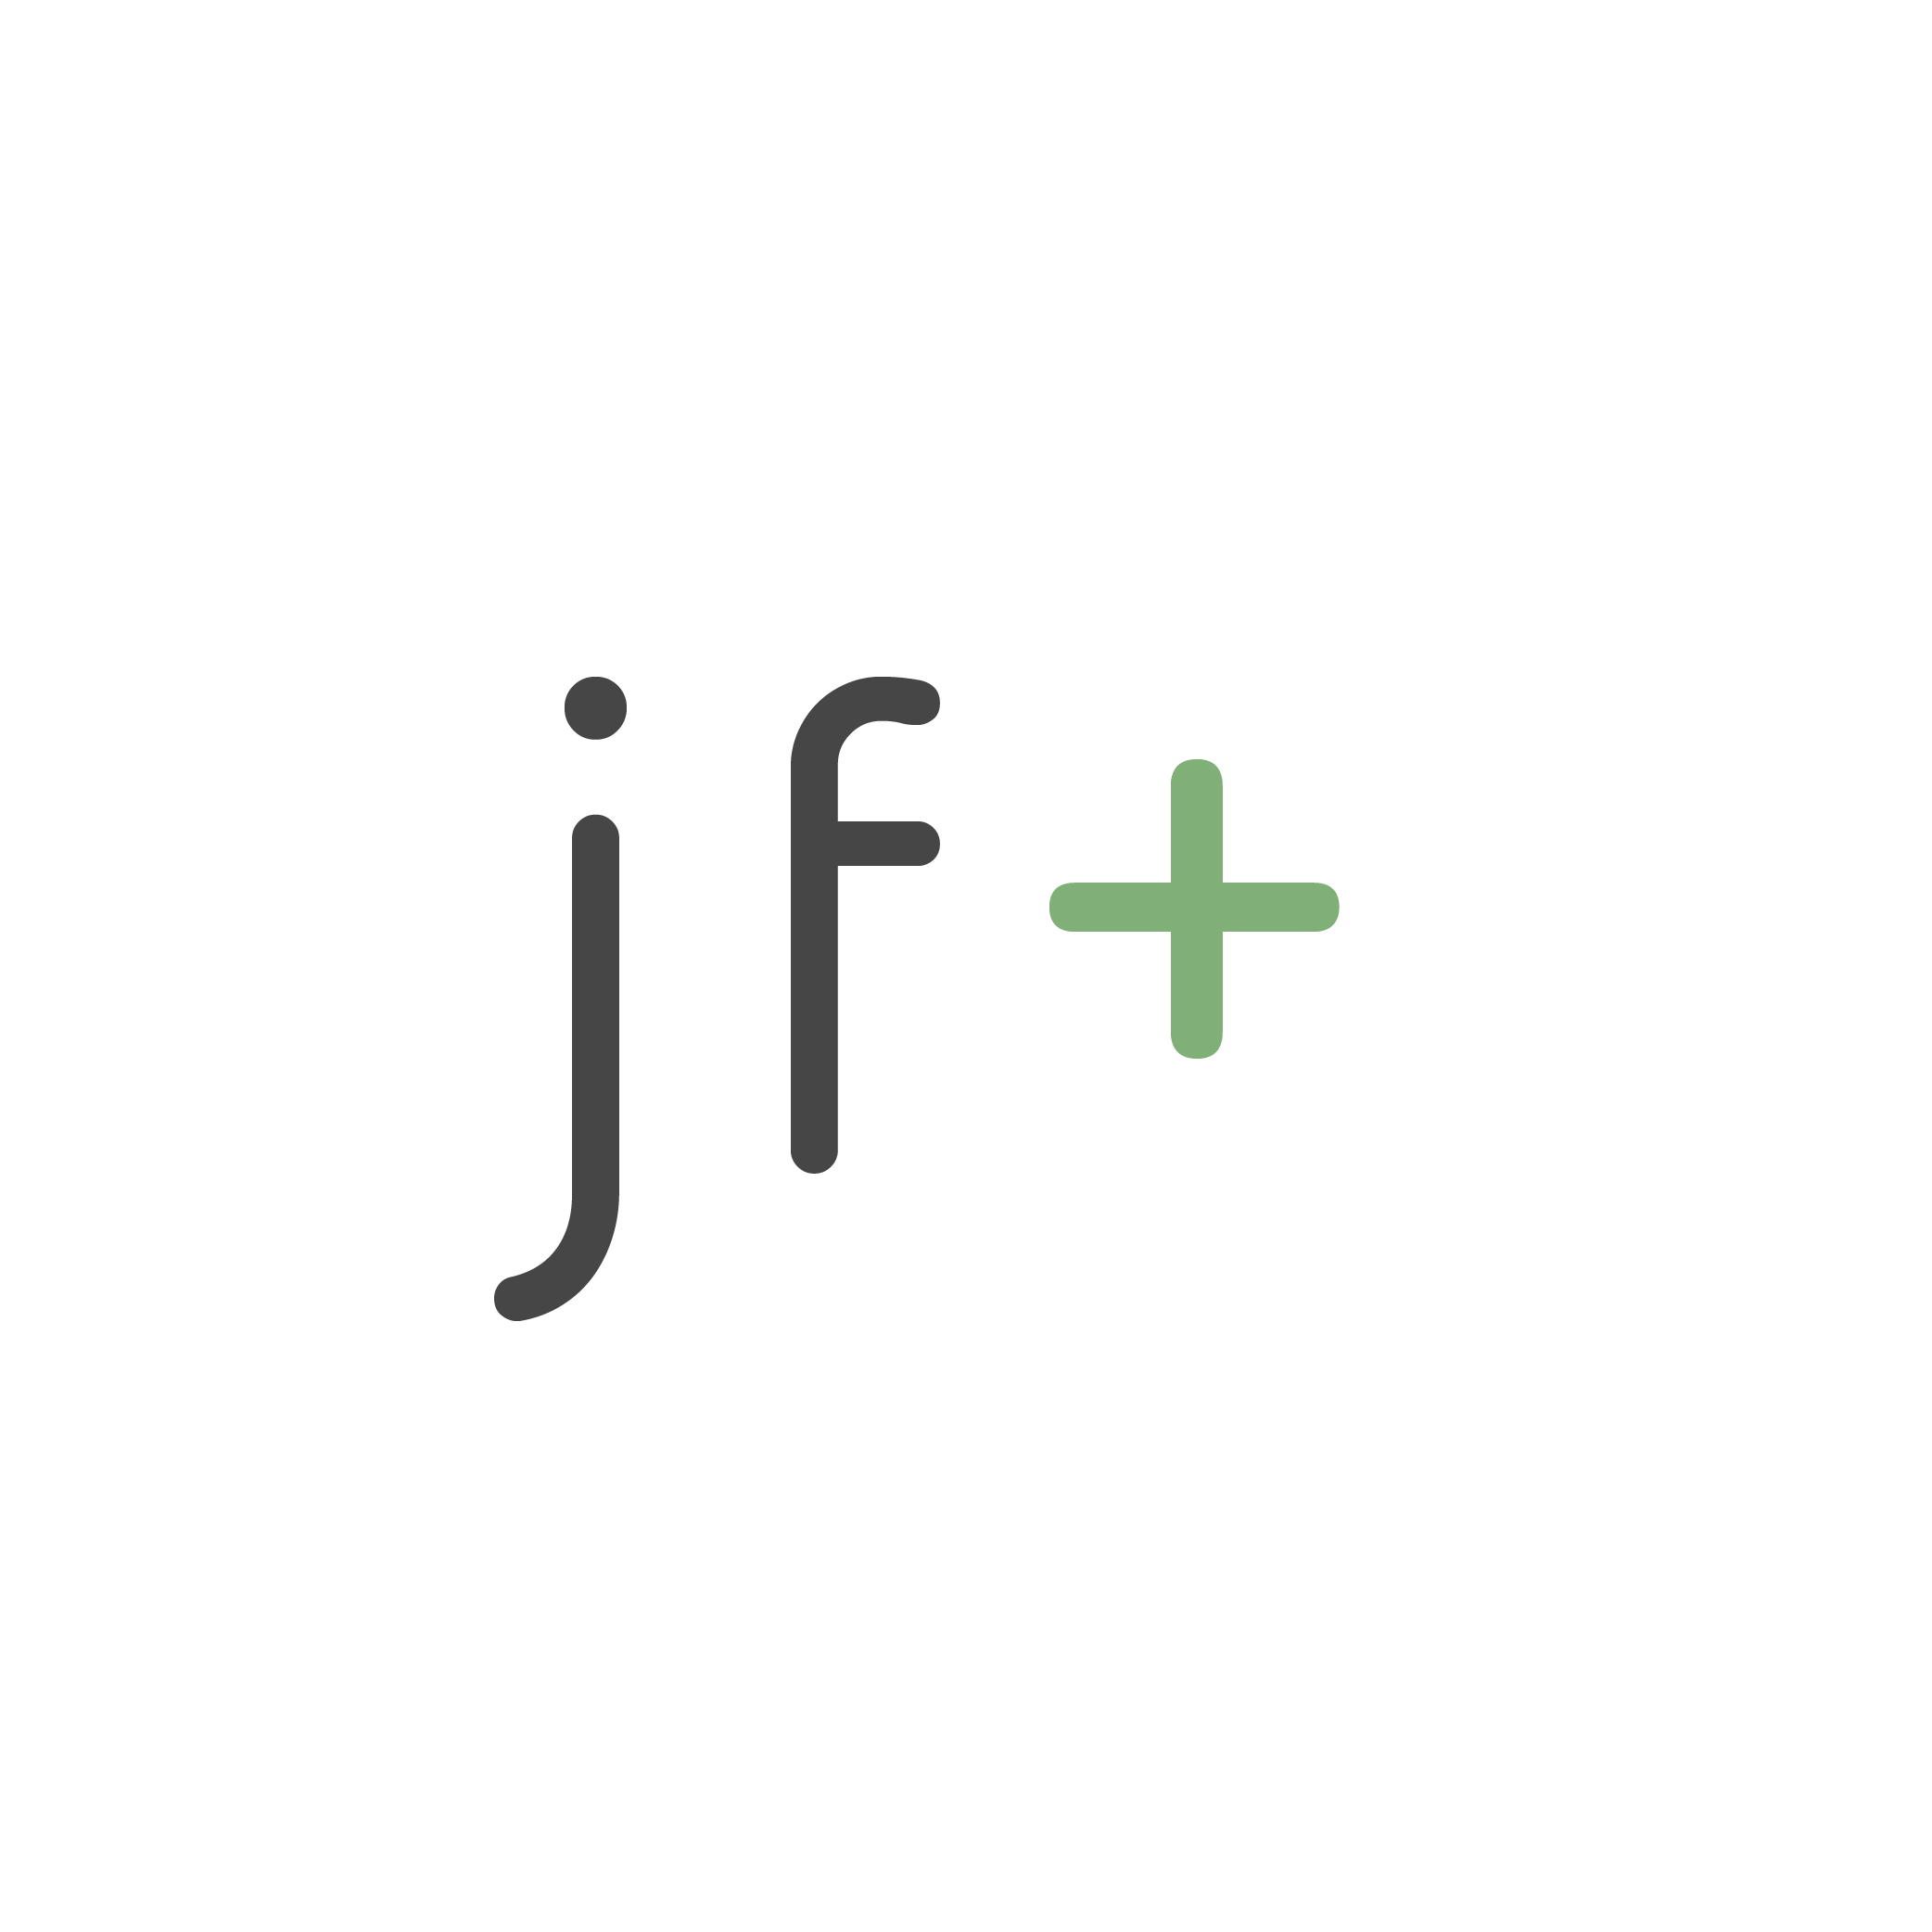 jf plus logo